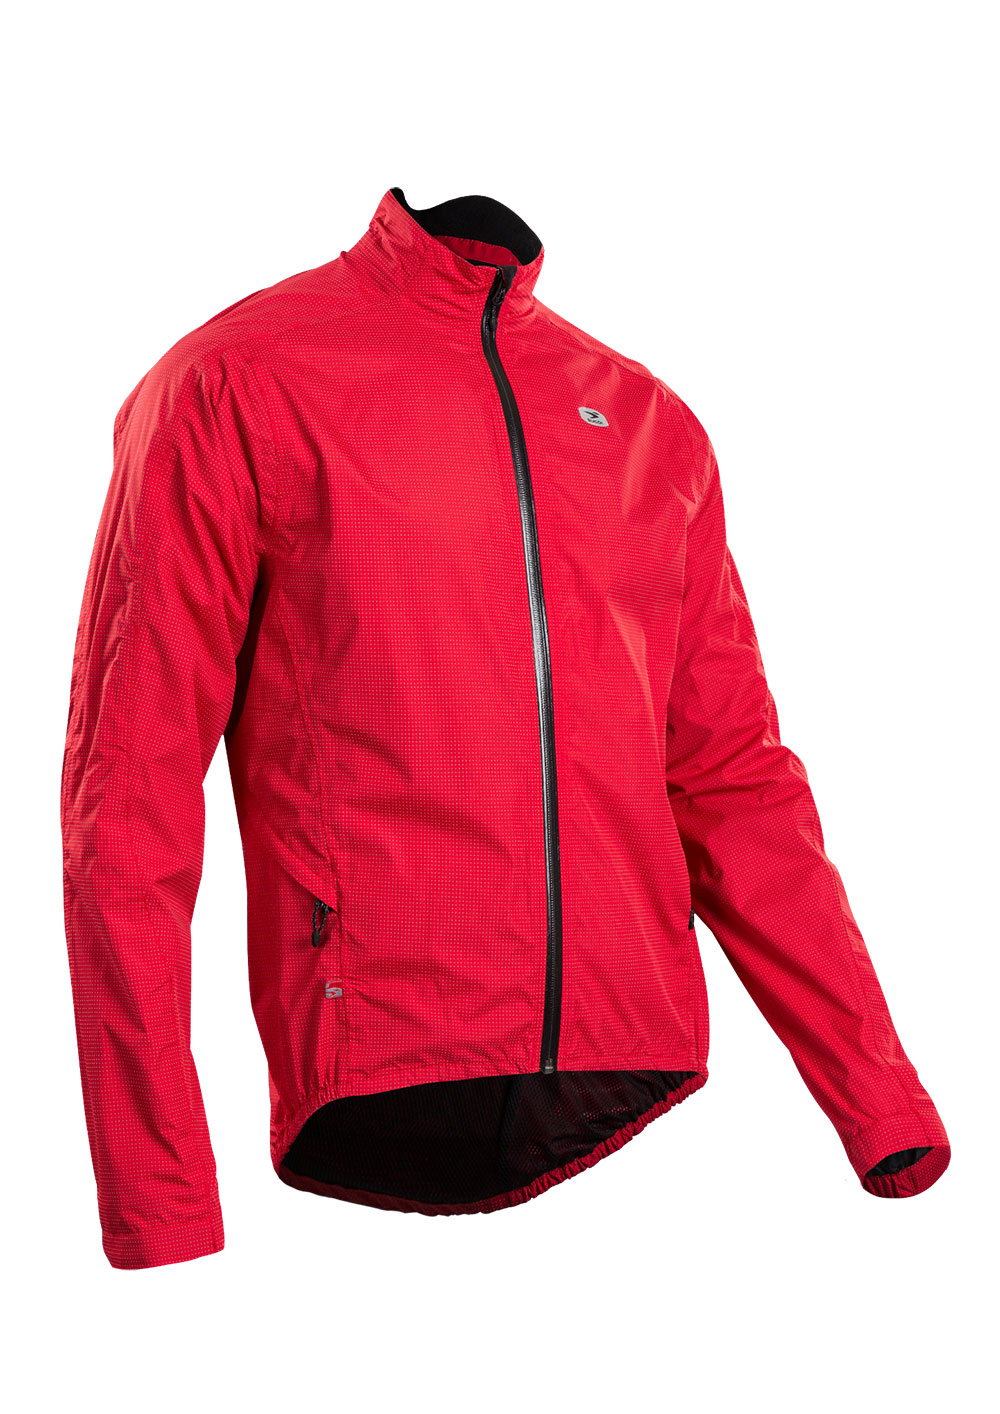 Куртка Sugoi ZAP BIKE, светоотражающая ткань, мужская, CHI (красная), XL фото 